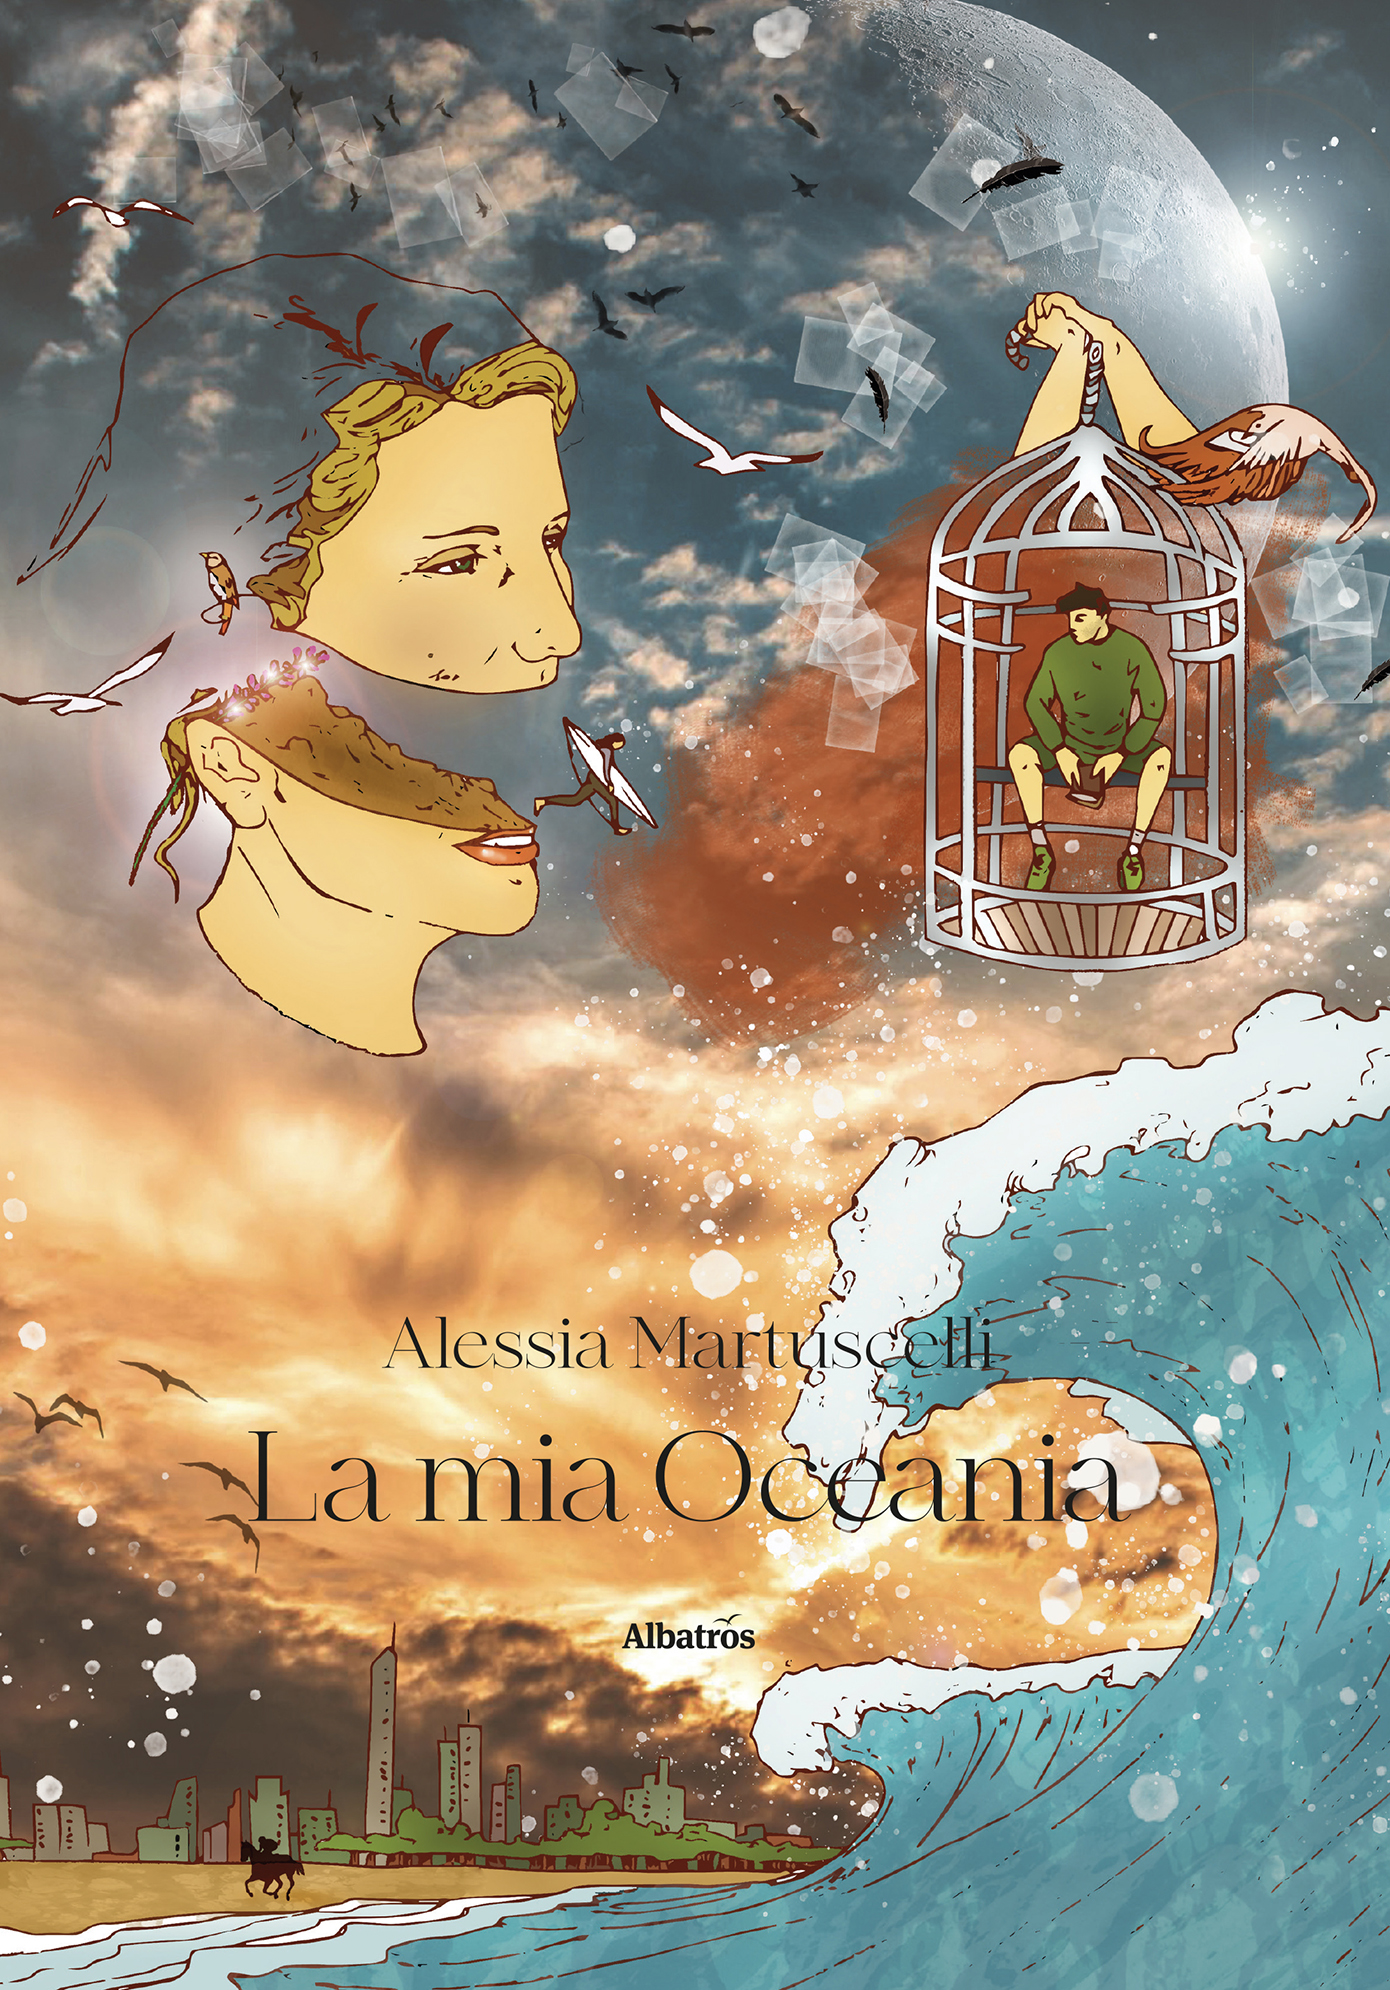 Alessia Martuscelli presenta il romanzo “La mia Oceania”.